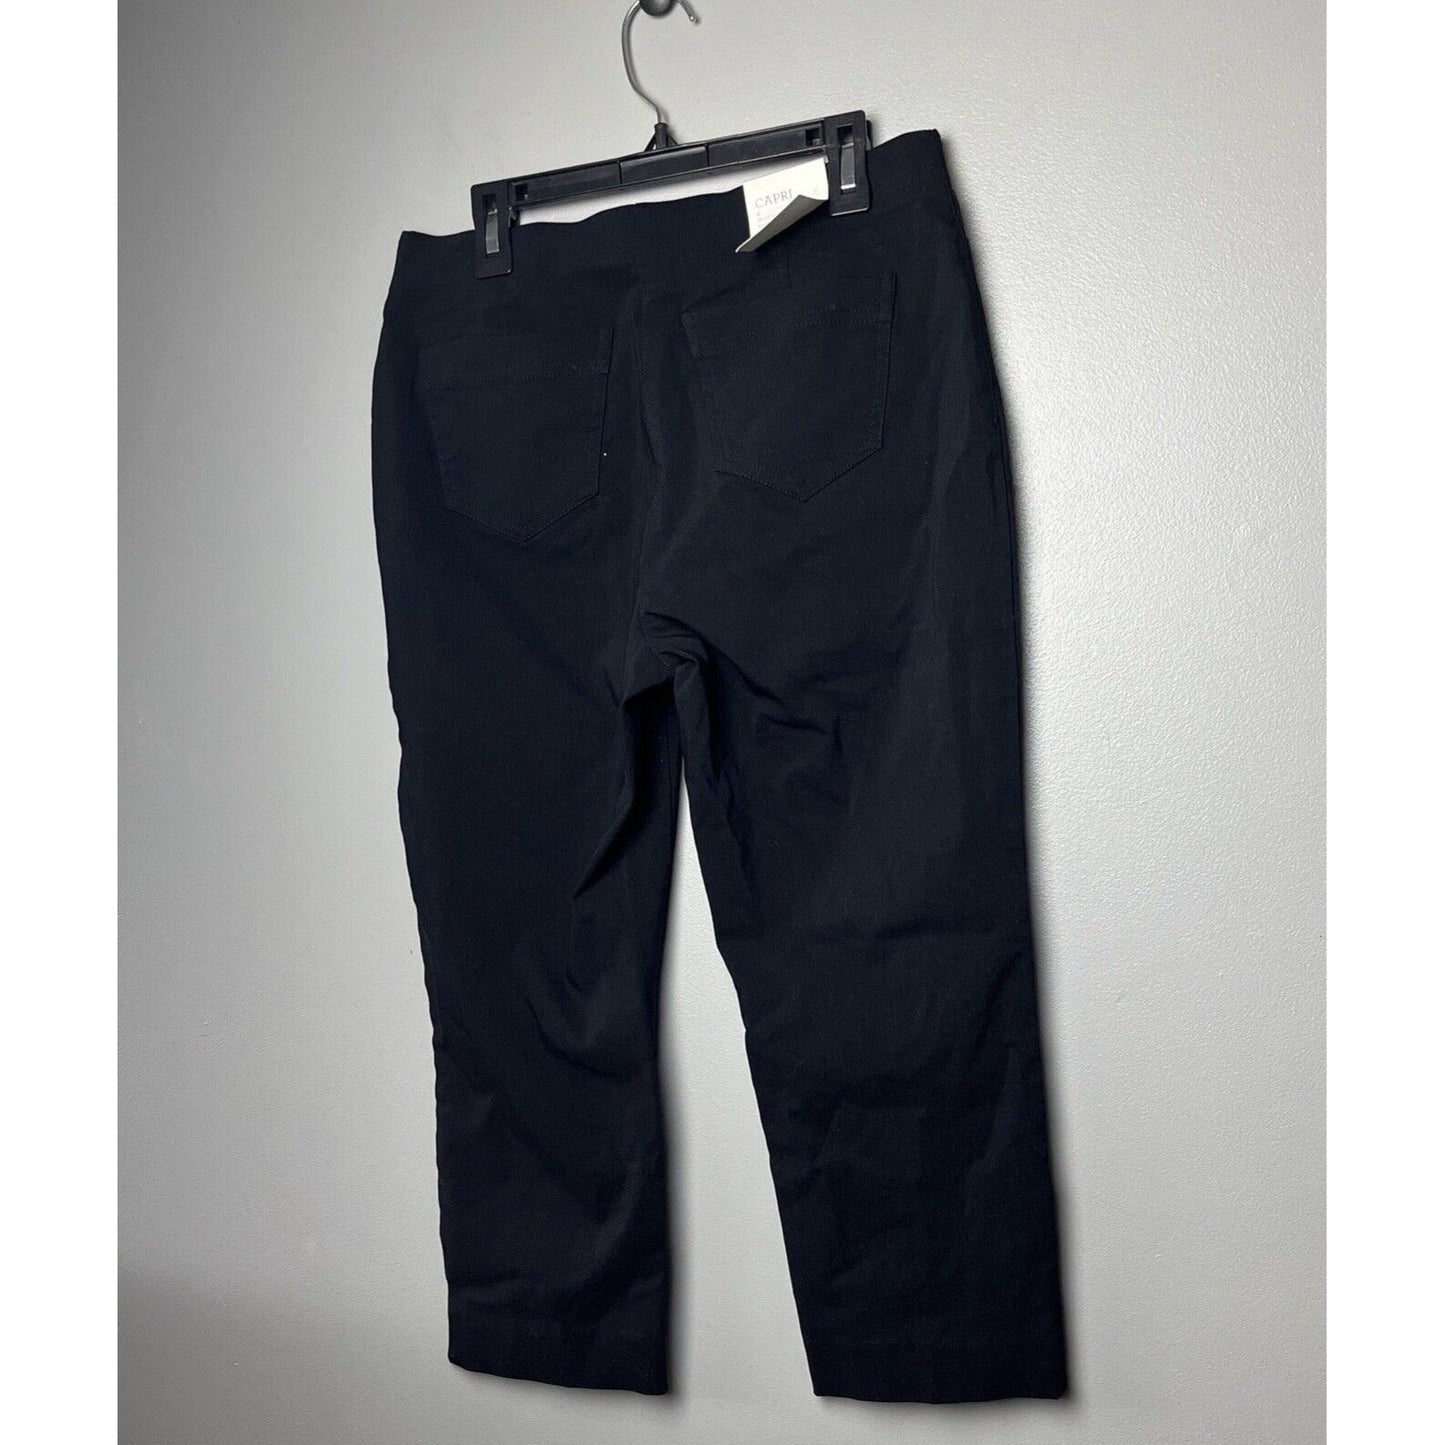 Style & Co Womens Petite Pull-On Capri Pants ( Petite, Deep Black)